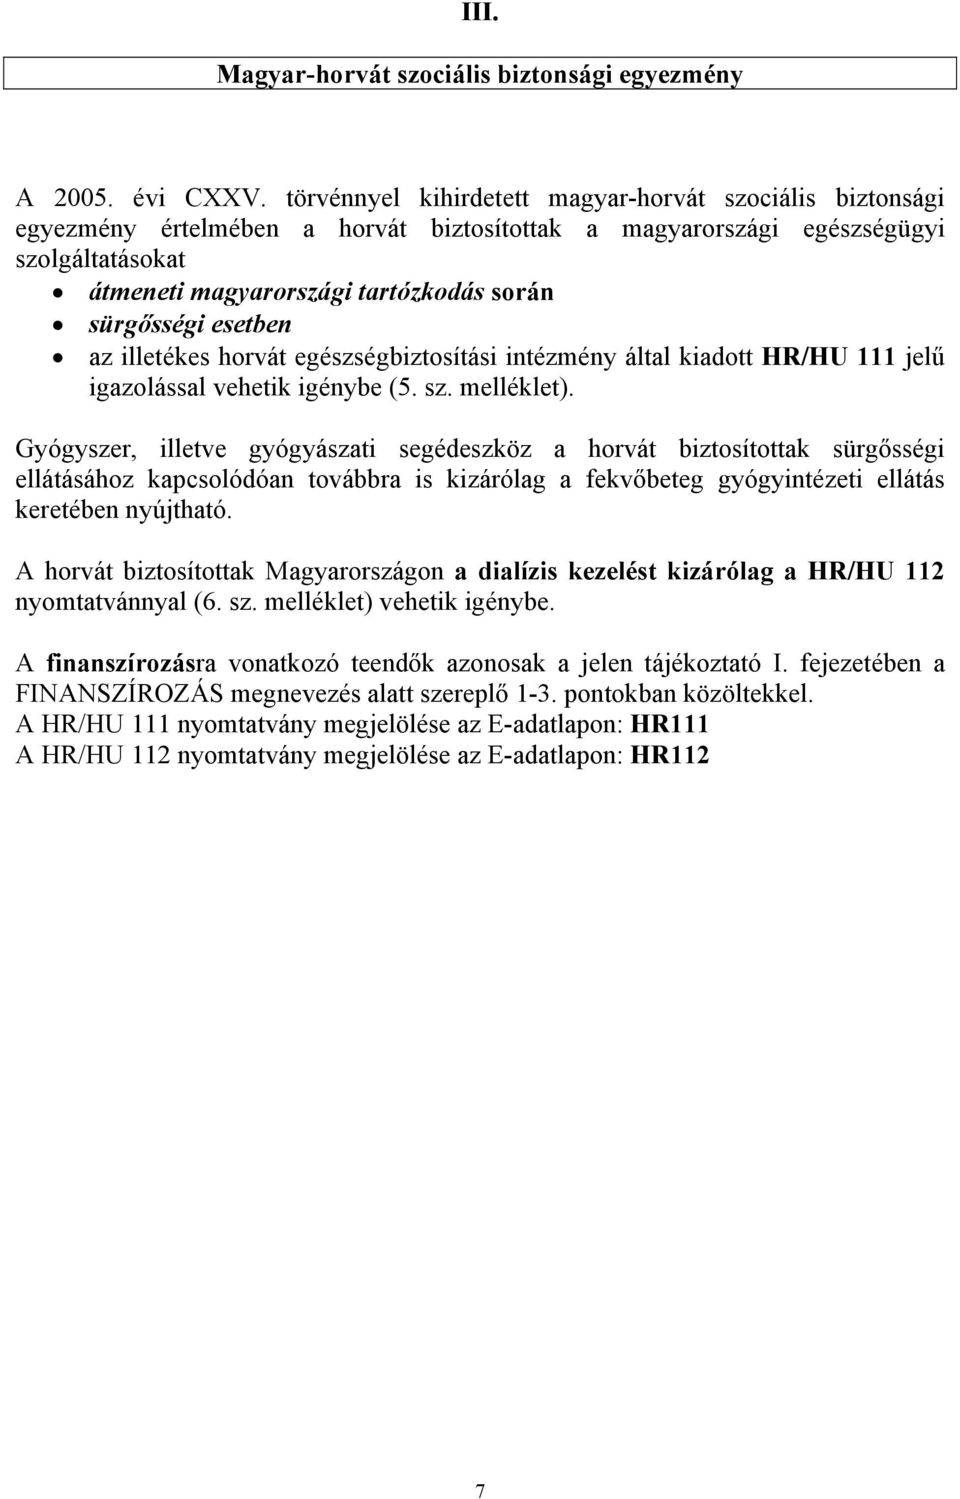 esetben az illetékes horvát egészségbiztosítási intézmény által kiadott HR/HU 111 jelű igazolással vehetik igénybe (5. sz. melléklet).